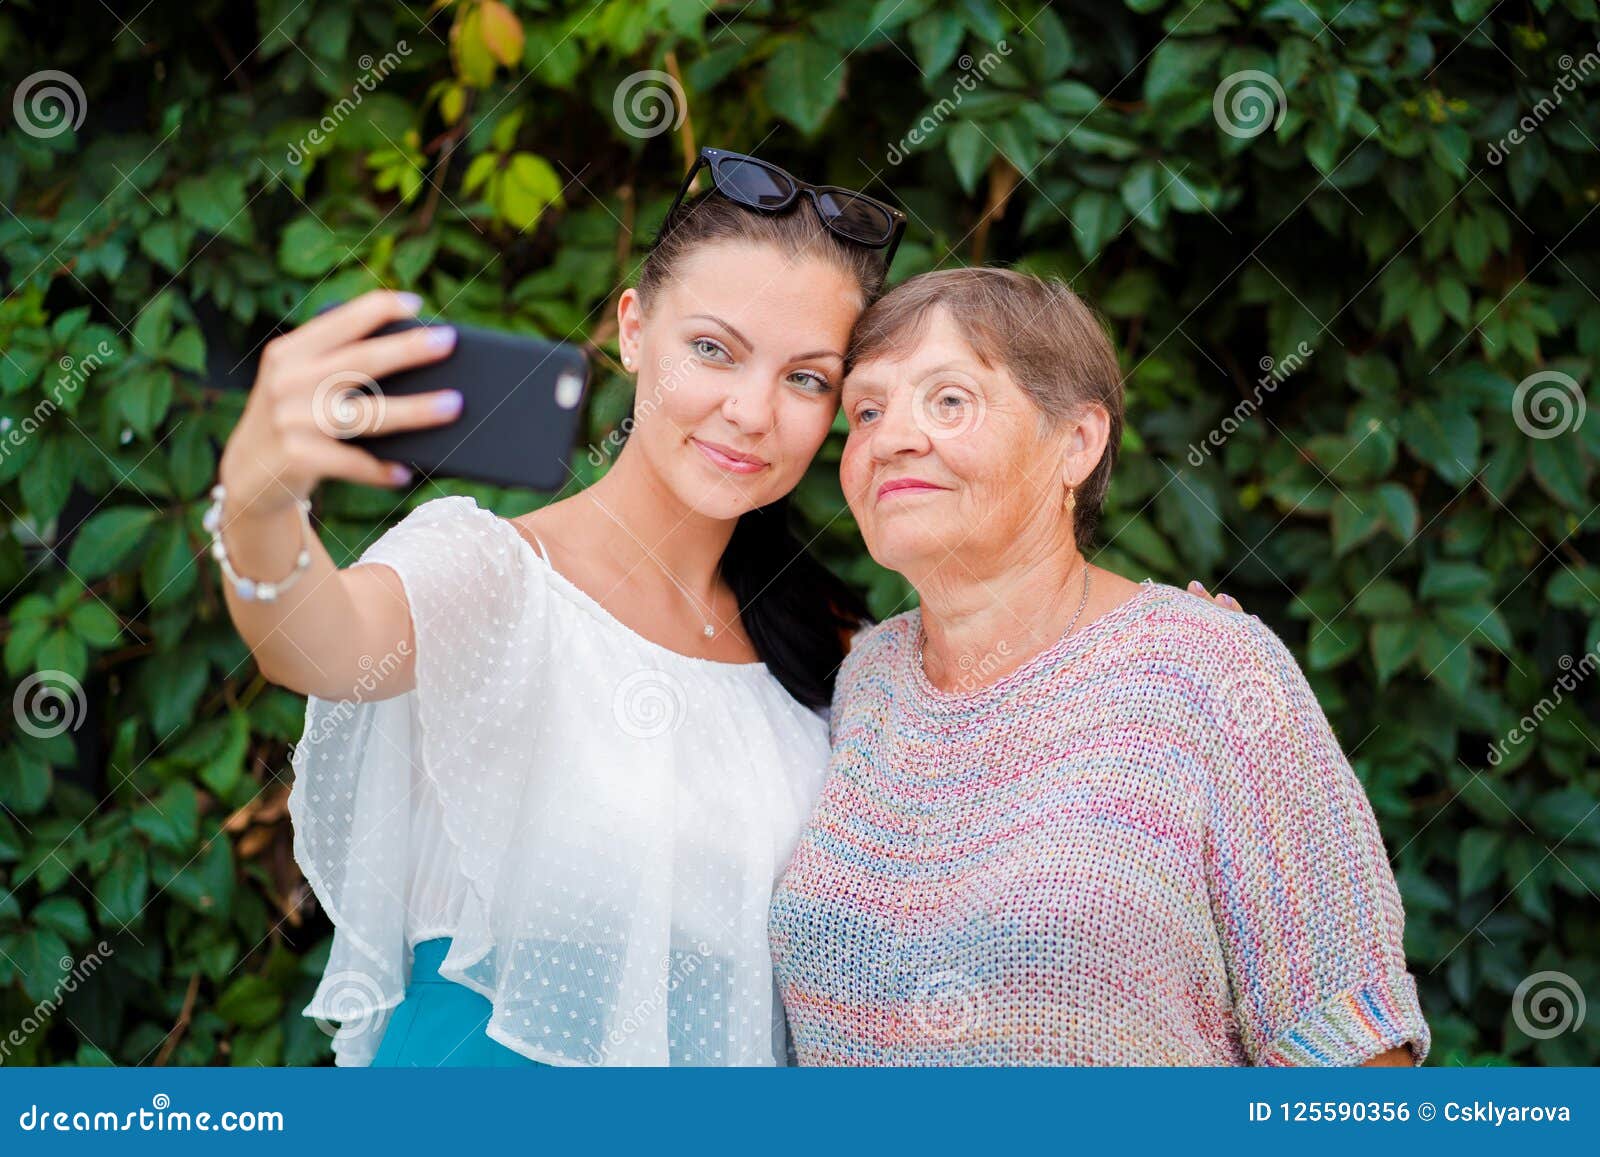 old granny selfies nude gallerie